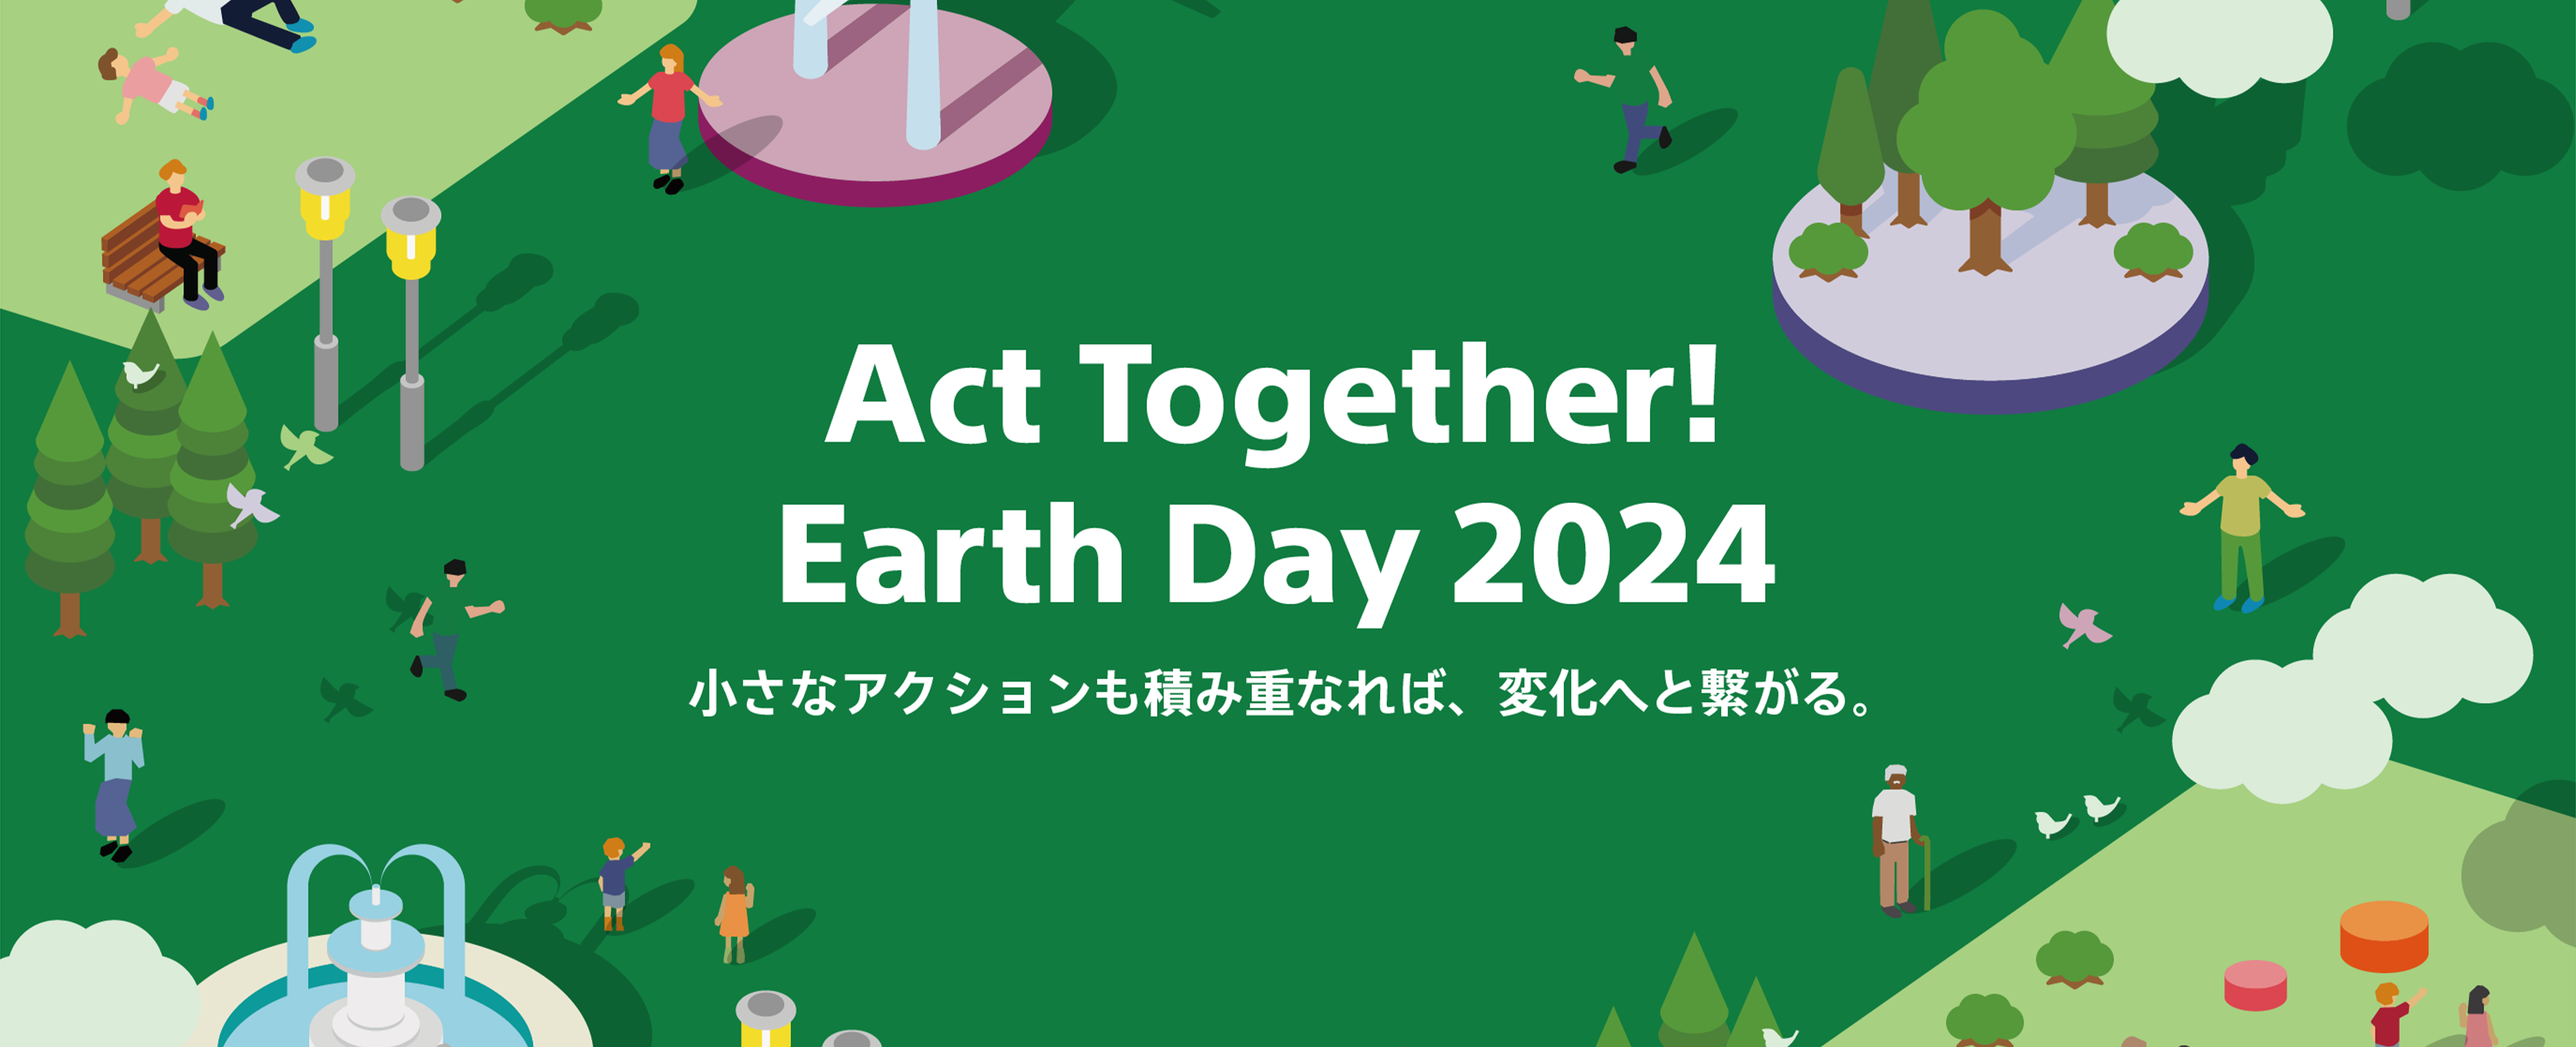 地球とさまざまな人のイラストが描かれている。「Act Together! Earth Day 2023- 小さなアクションも積み重なれば、変化へと繋がる。」と文字が書いてある。